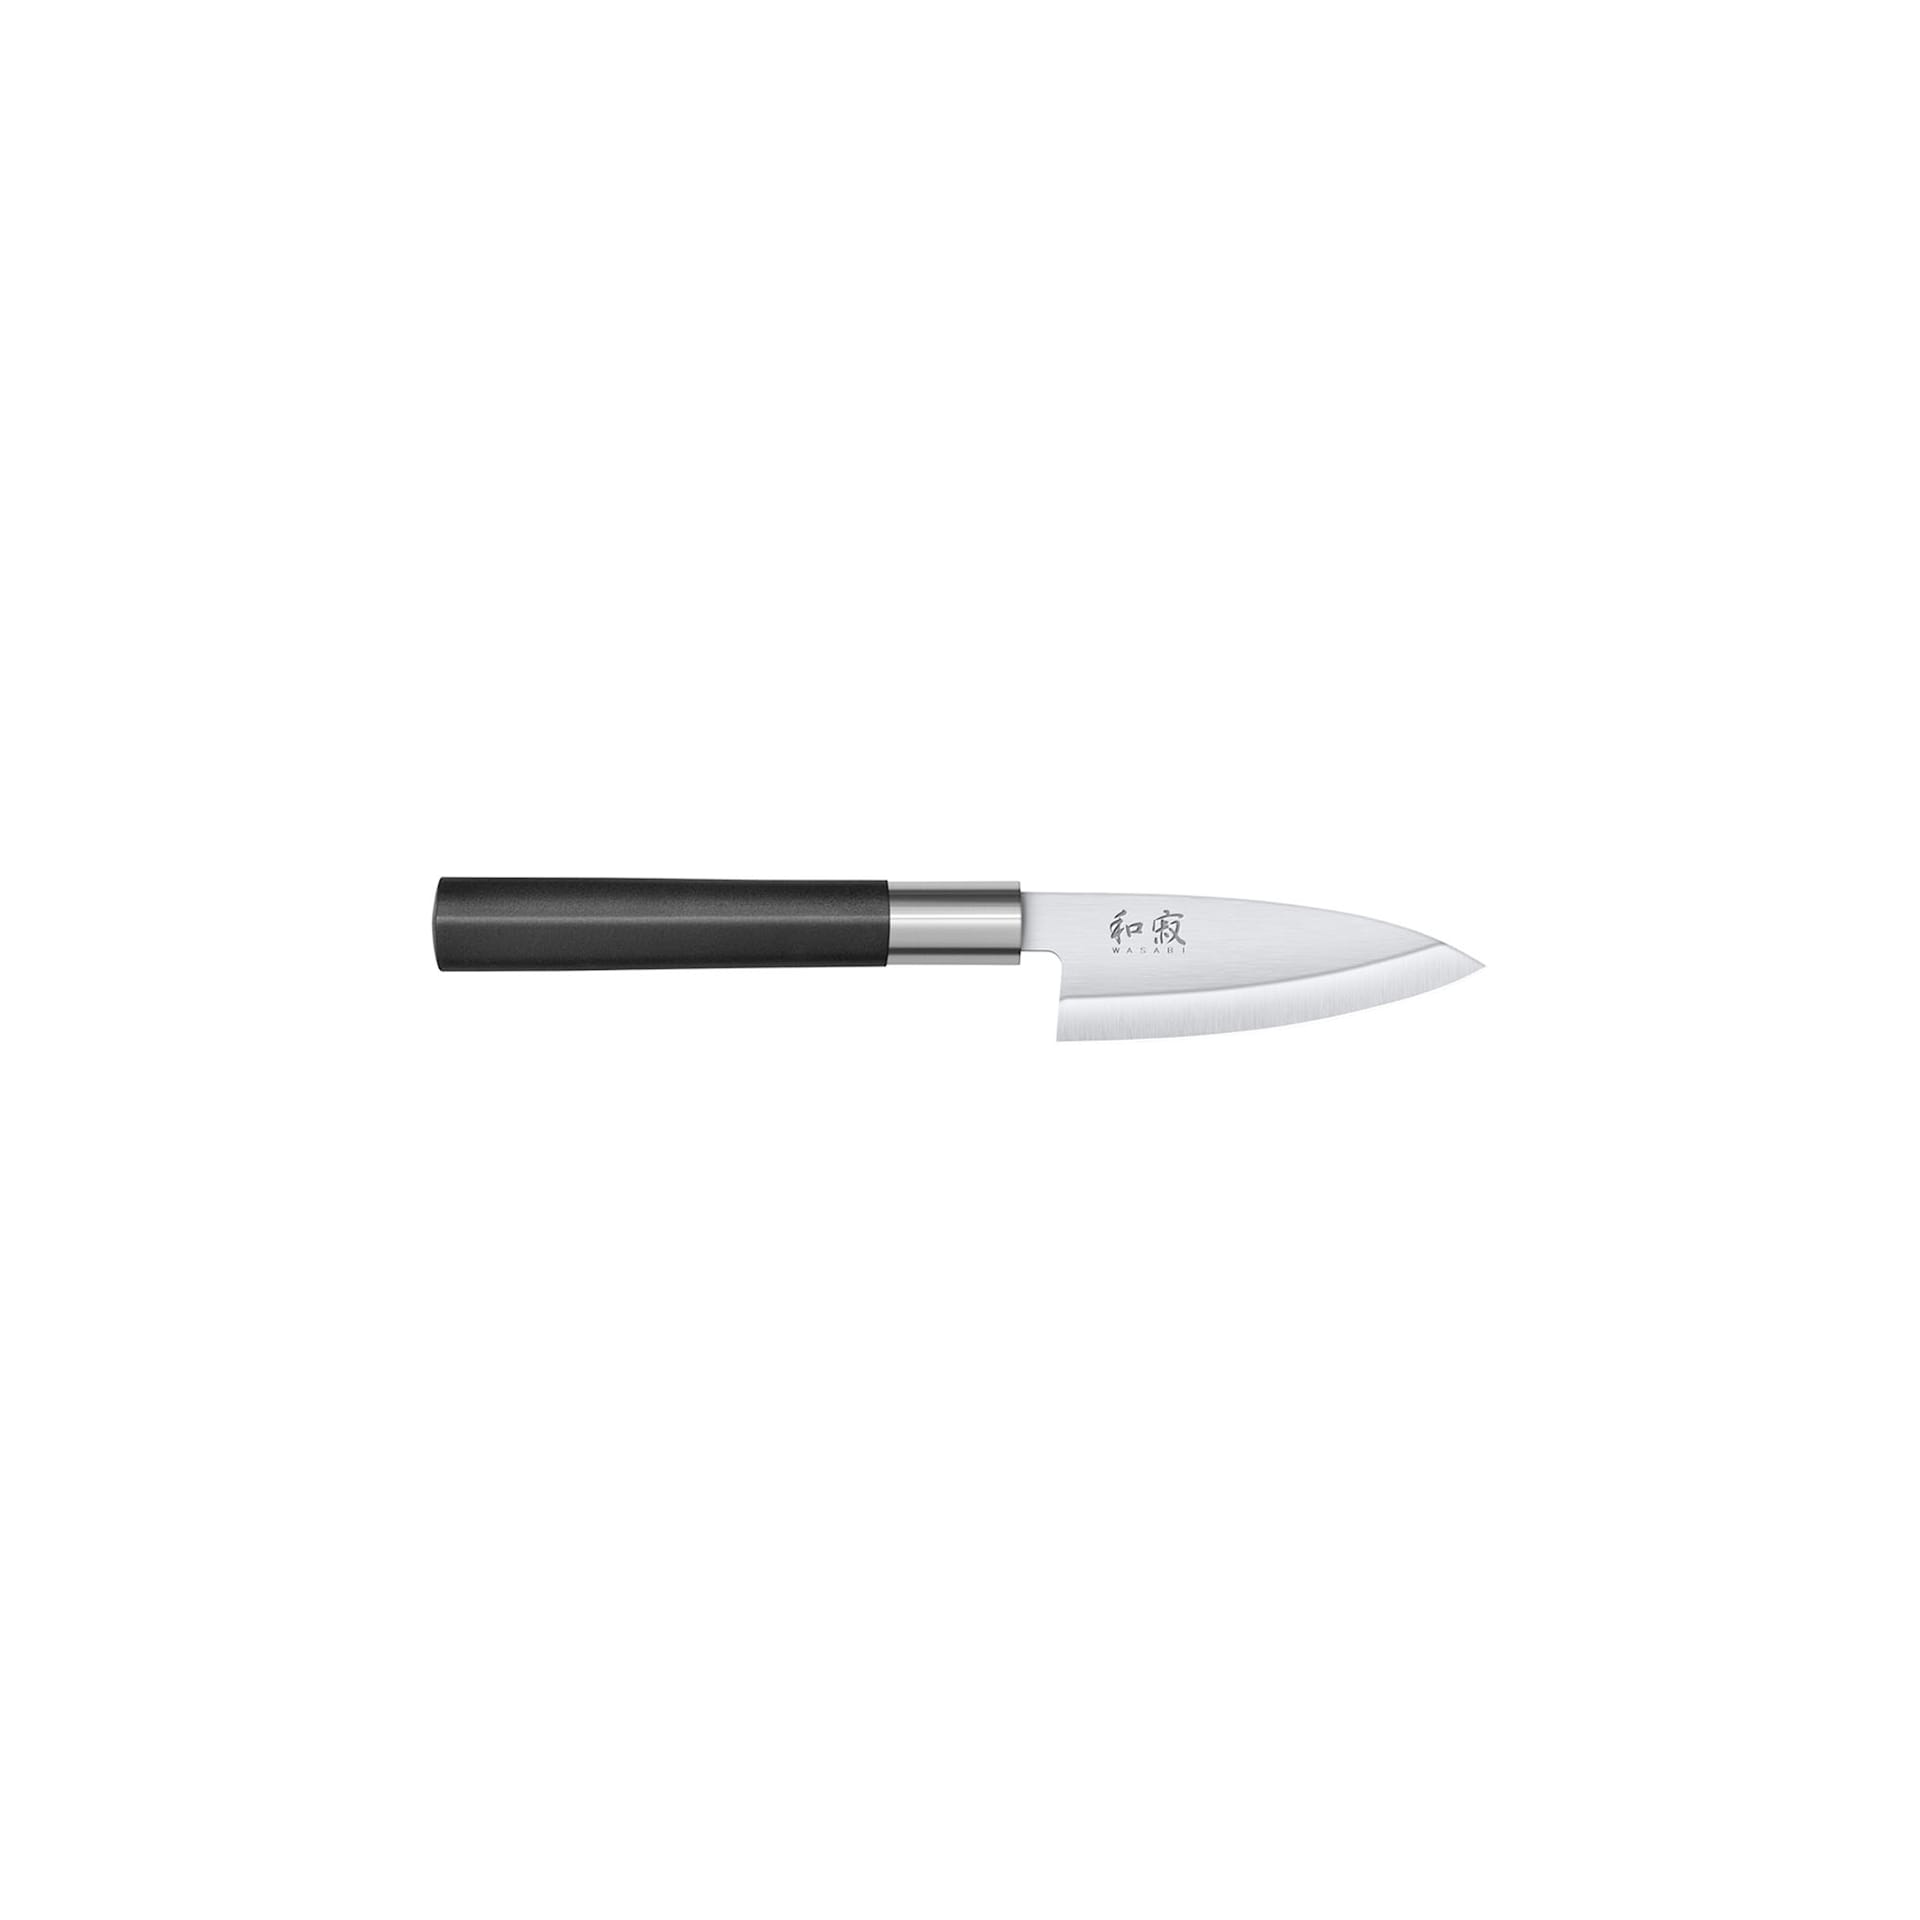 KAI WASABI Deba Chef's knife 10.5 cm - KAI - NO GA